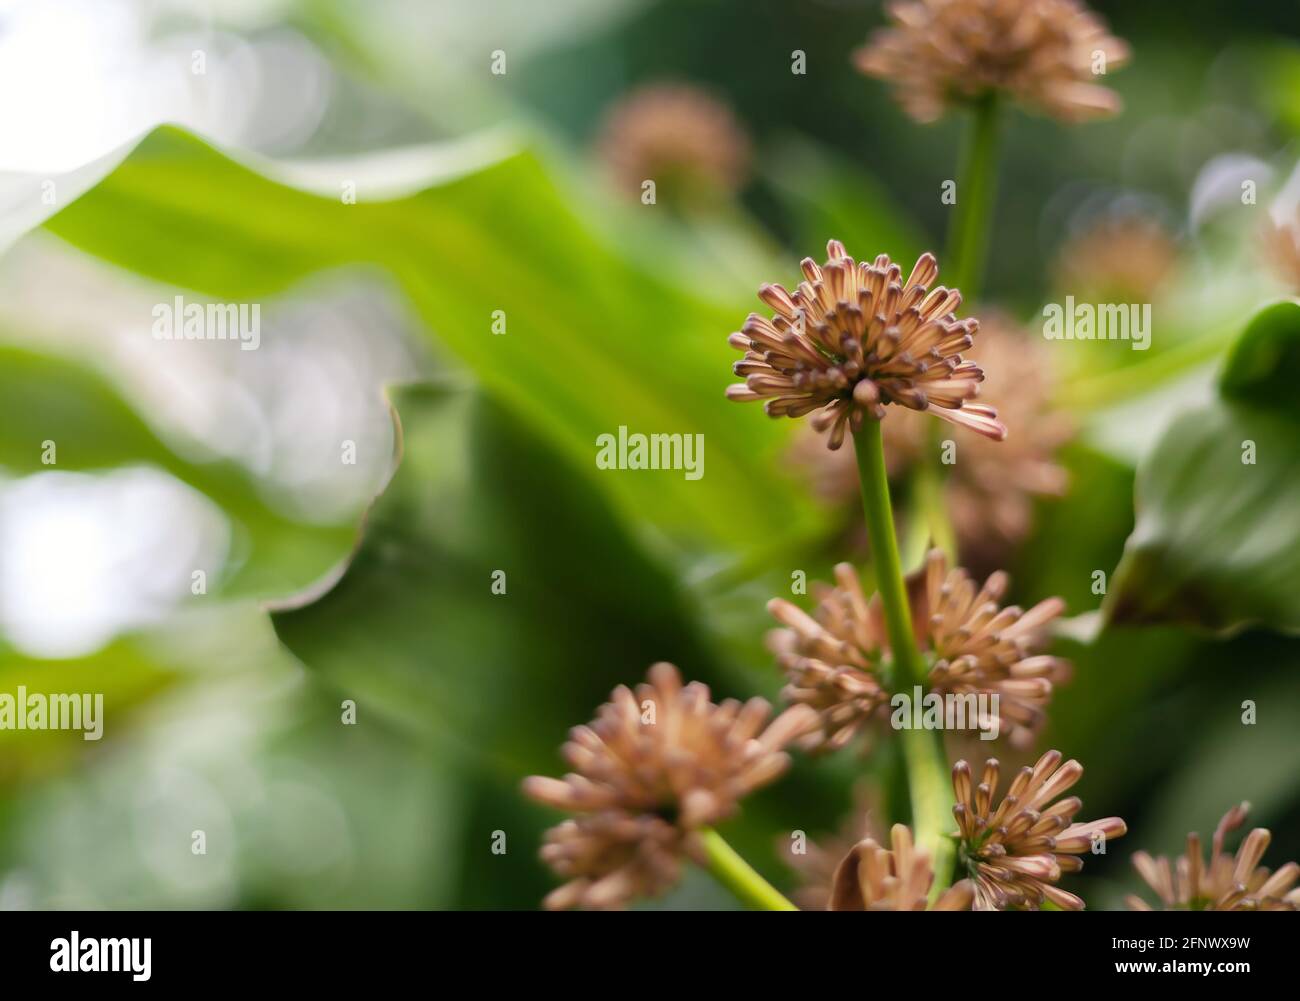 Beliebte Pflanze in Thailand. Dracaena Blüten sind duftend, der thailändische Name für den heiligen Vassana Baum. Stockfoto